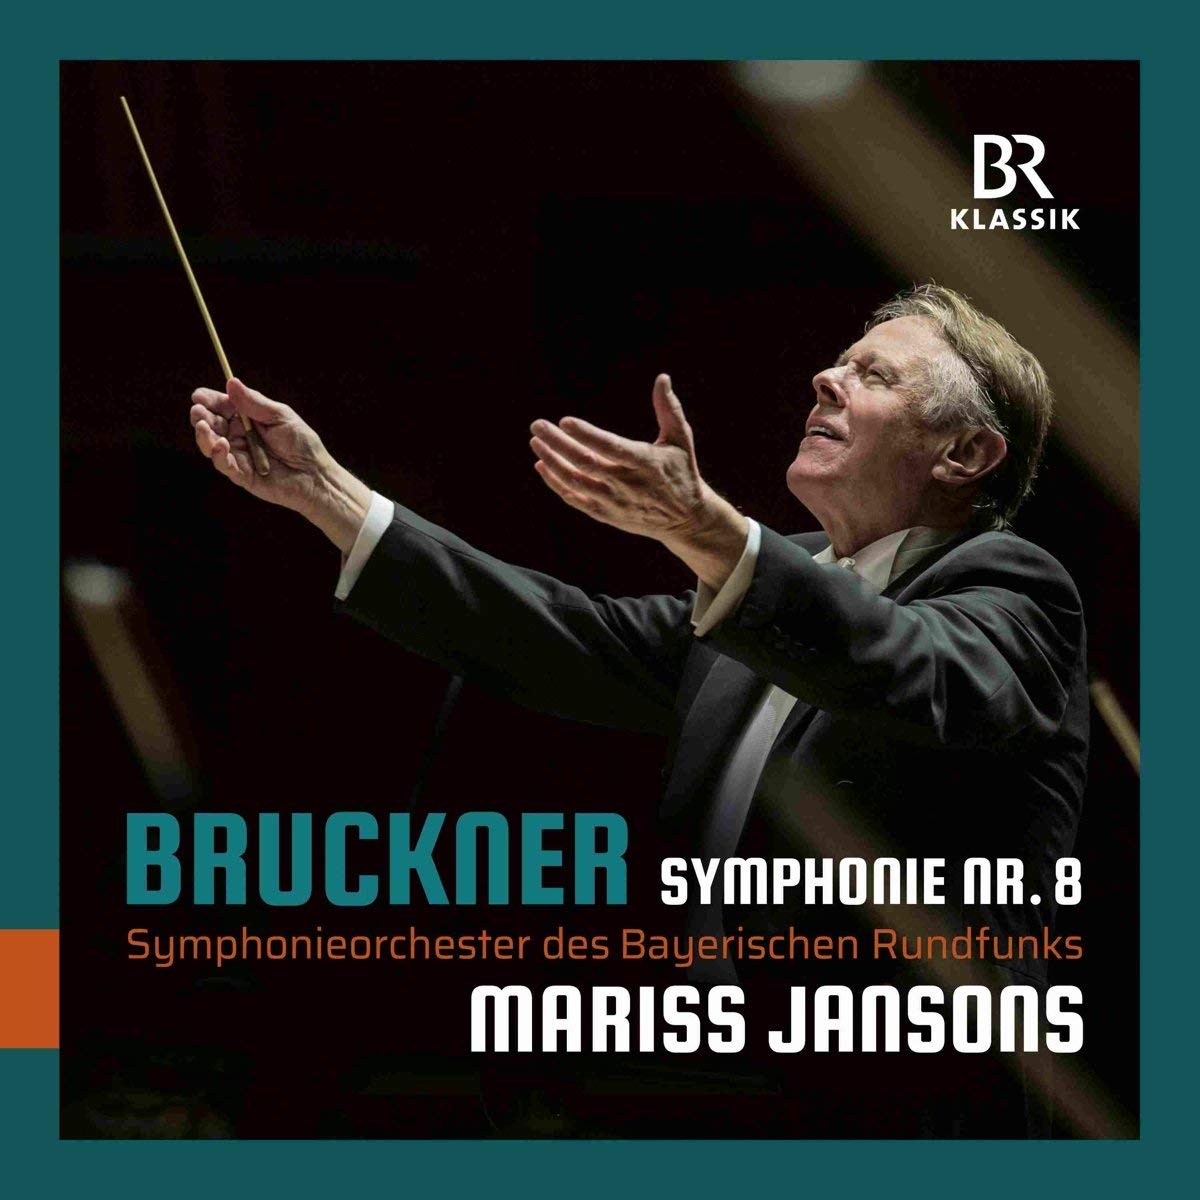 Bruckner: Symphonie No. 8 | Anton Bruckner, Mariss Jansons, Symphonieorchester des Bayerischen Rundfunks